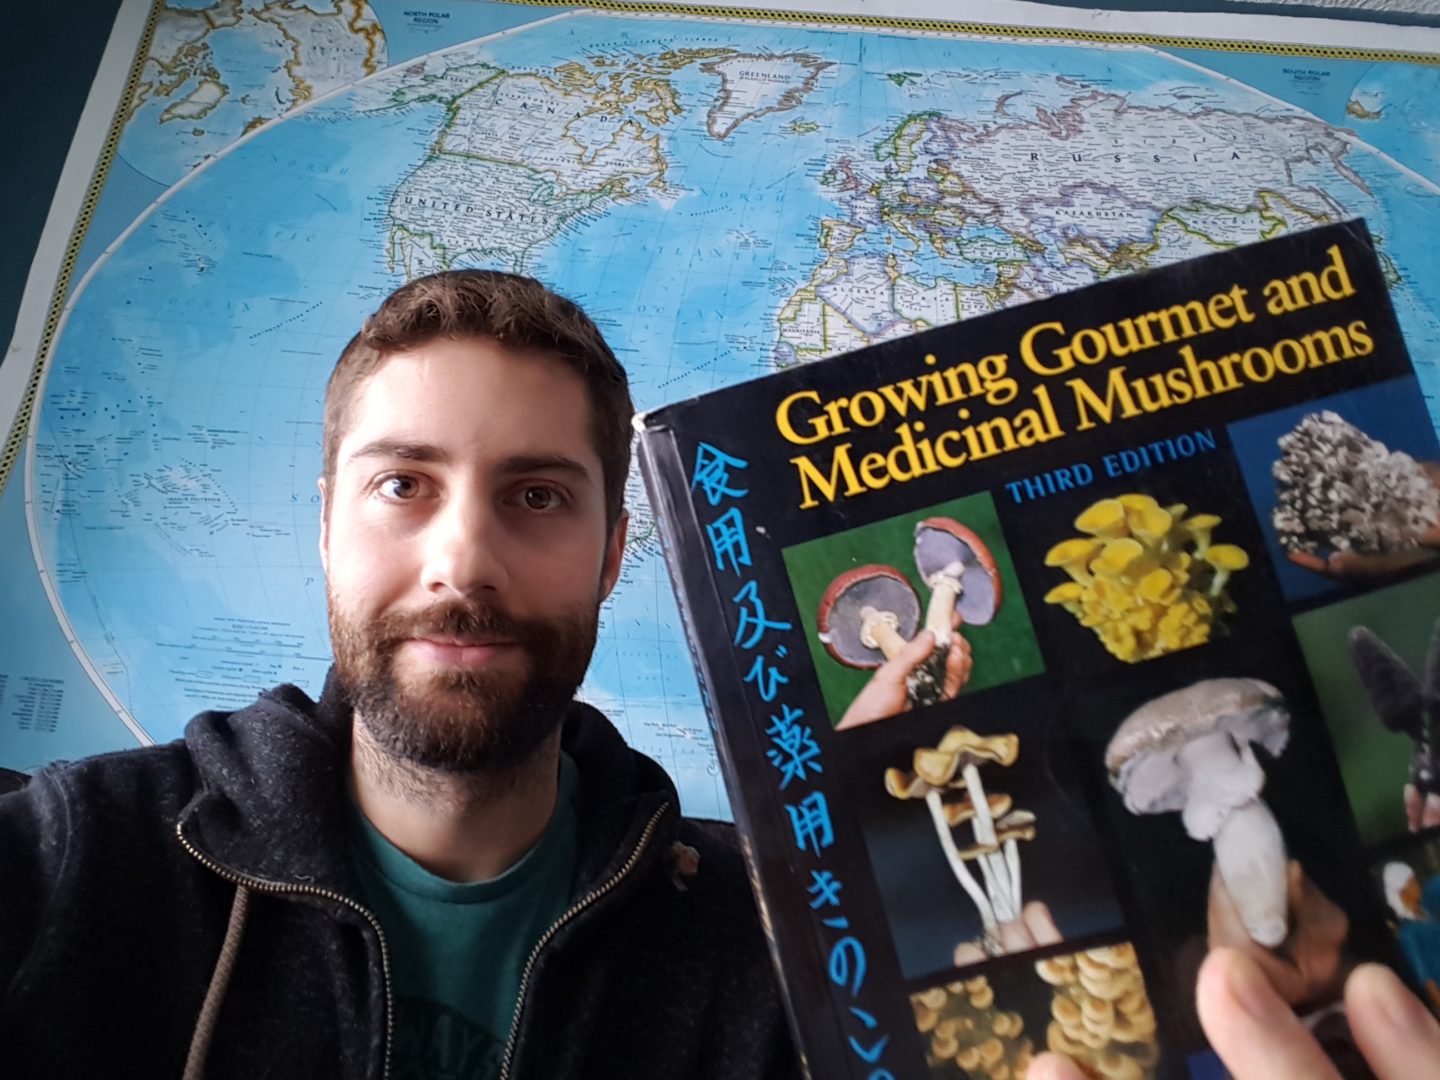 growing gourmet and medicinal mushrooms book